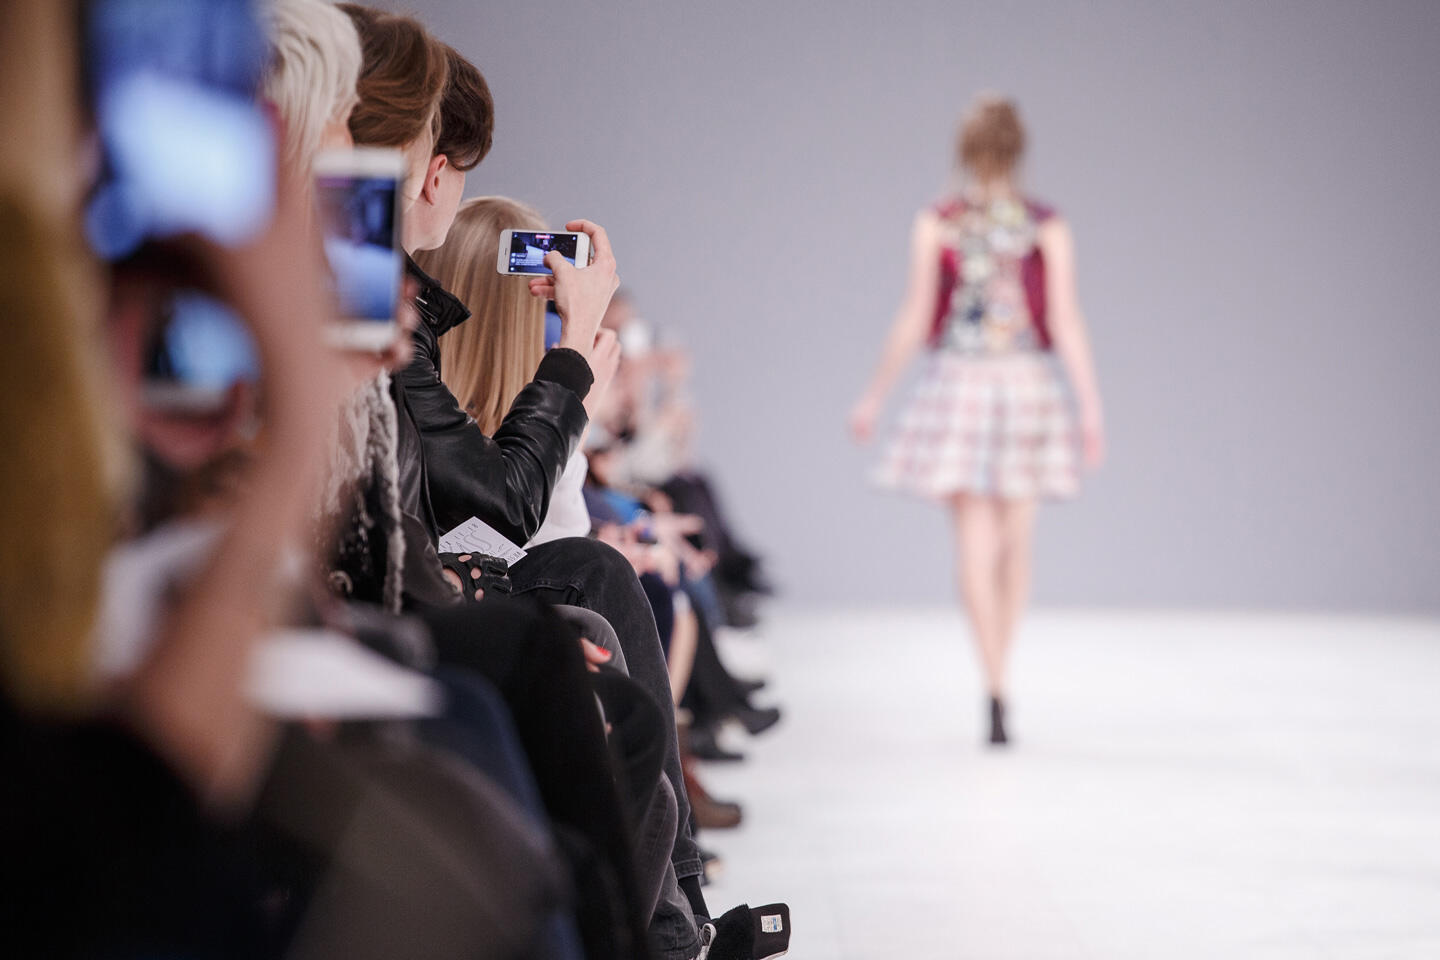 Espectadores capturando con sus smartphones un desfile de moda en la Semana de la Moda de París. En primer plano, una fila de personas sentadas, algunas tomando fotos de una modelo en un vestido corto y colorido que camina por la pasarela iluminada.